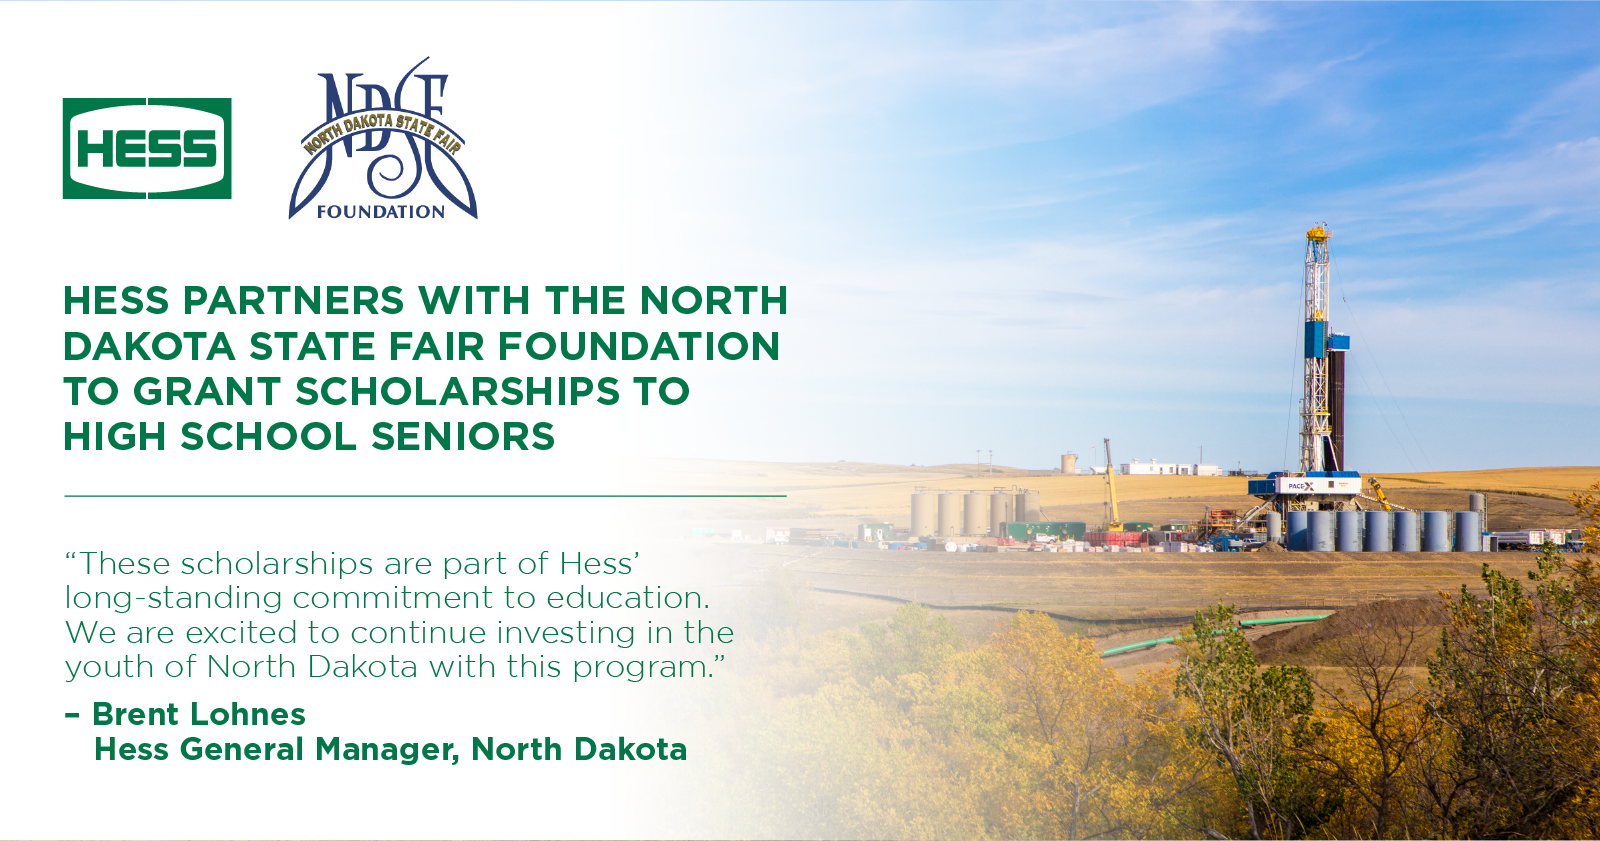 Hess to Grant Scholarships for High School Seniors in North Dakota